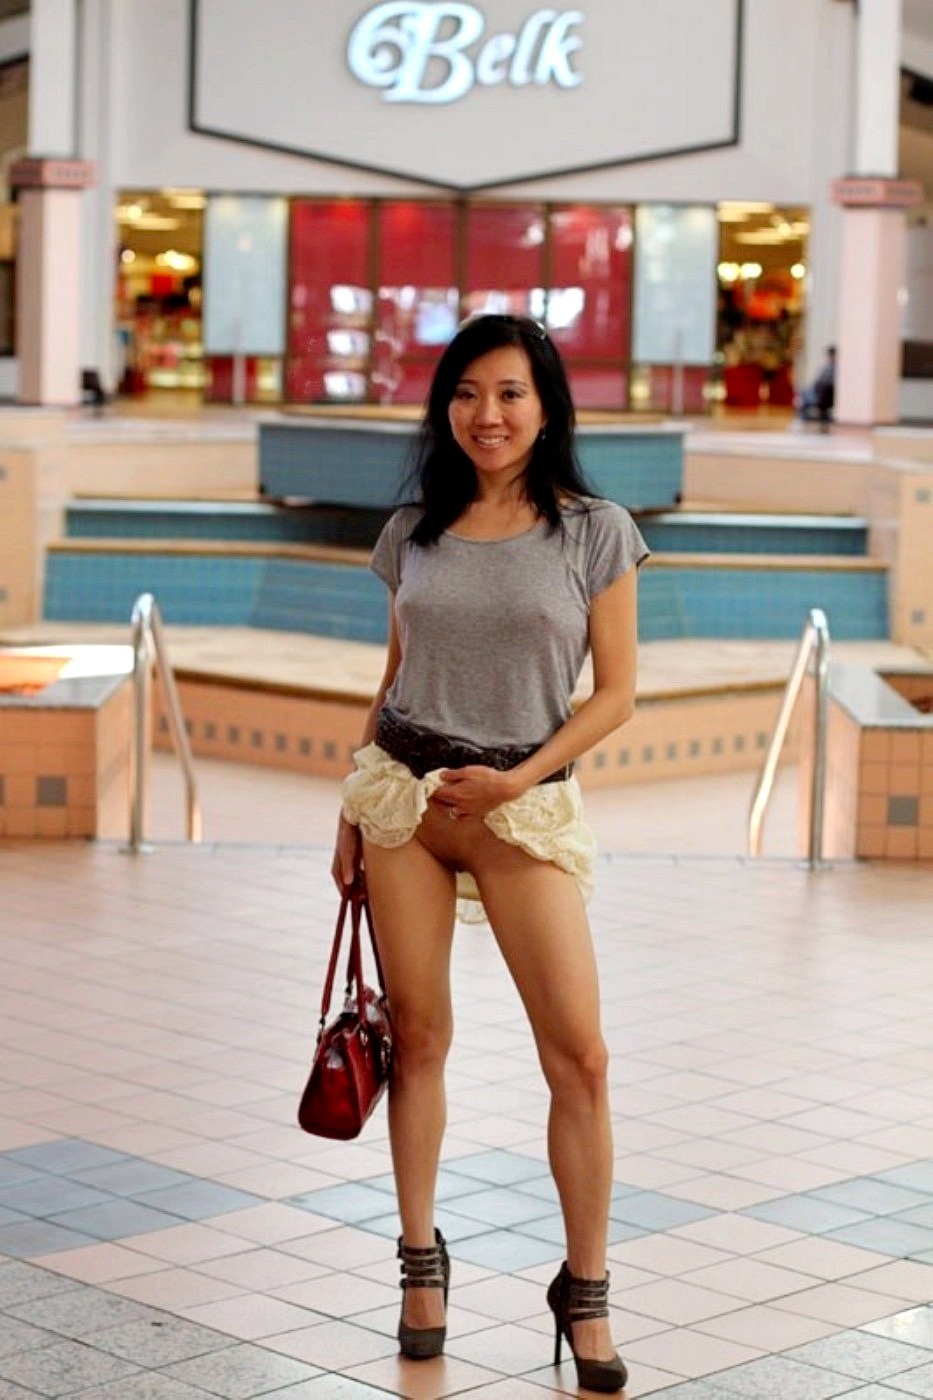 Mall pussy upskirt - Sex photo